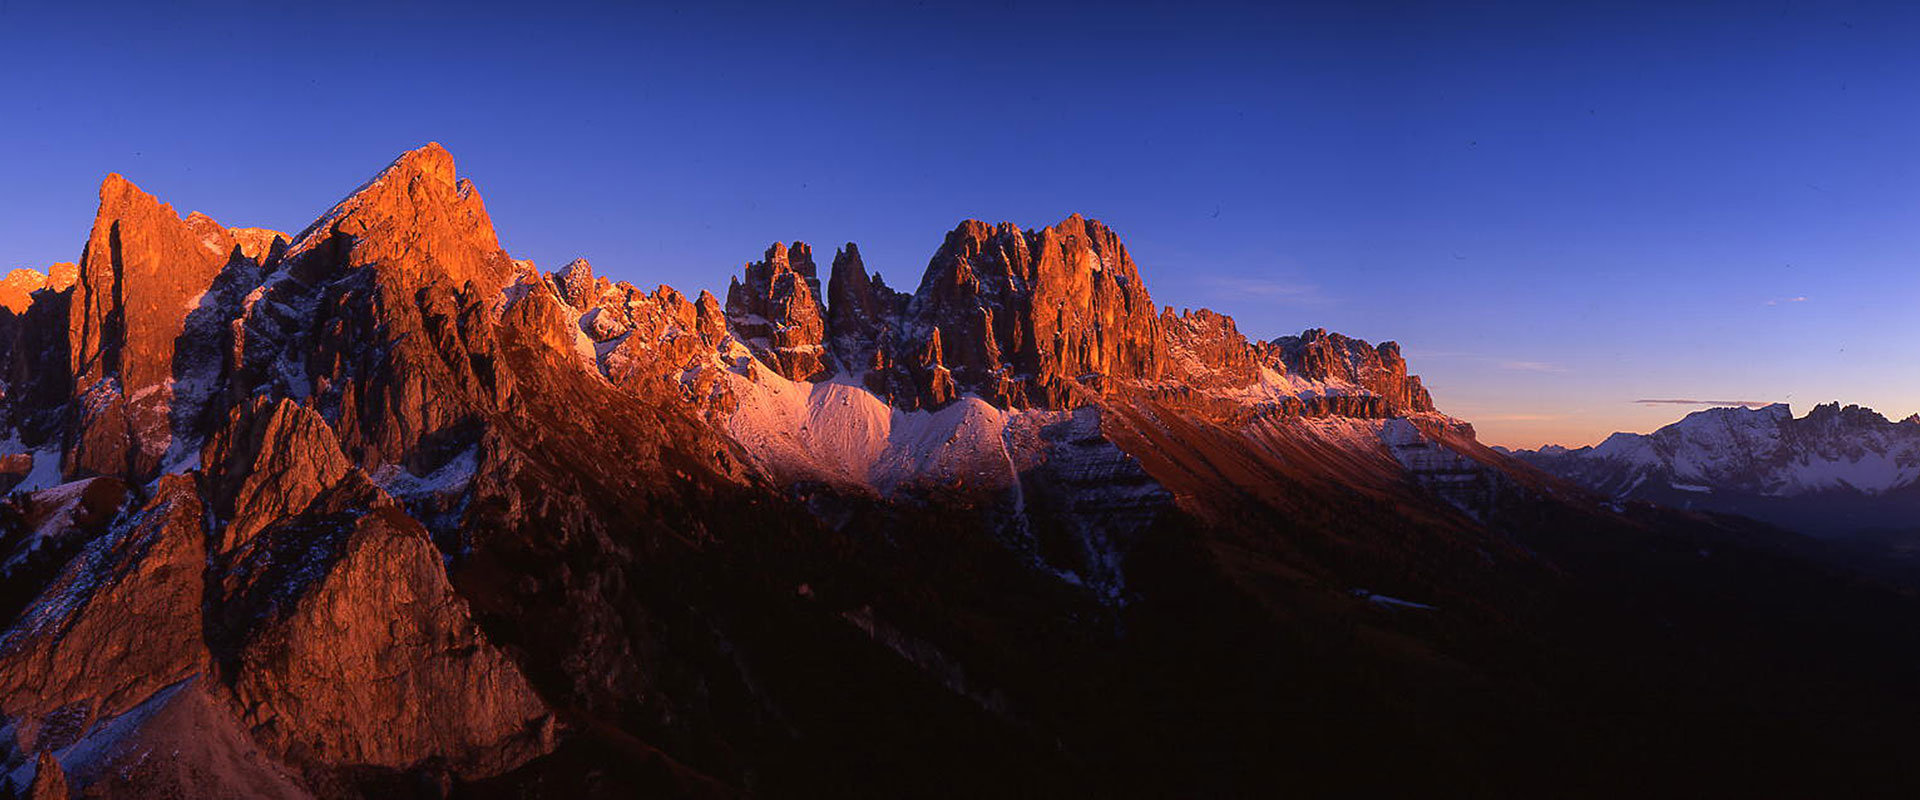 Catinaccio Dolomites